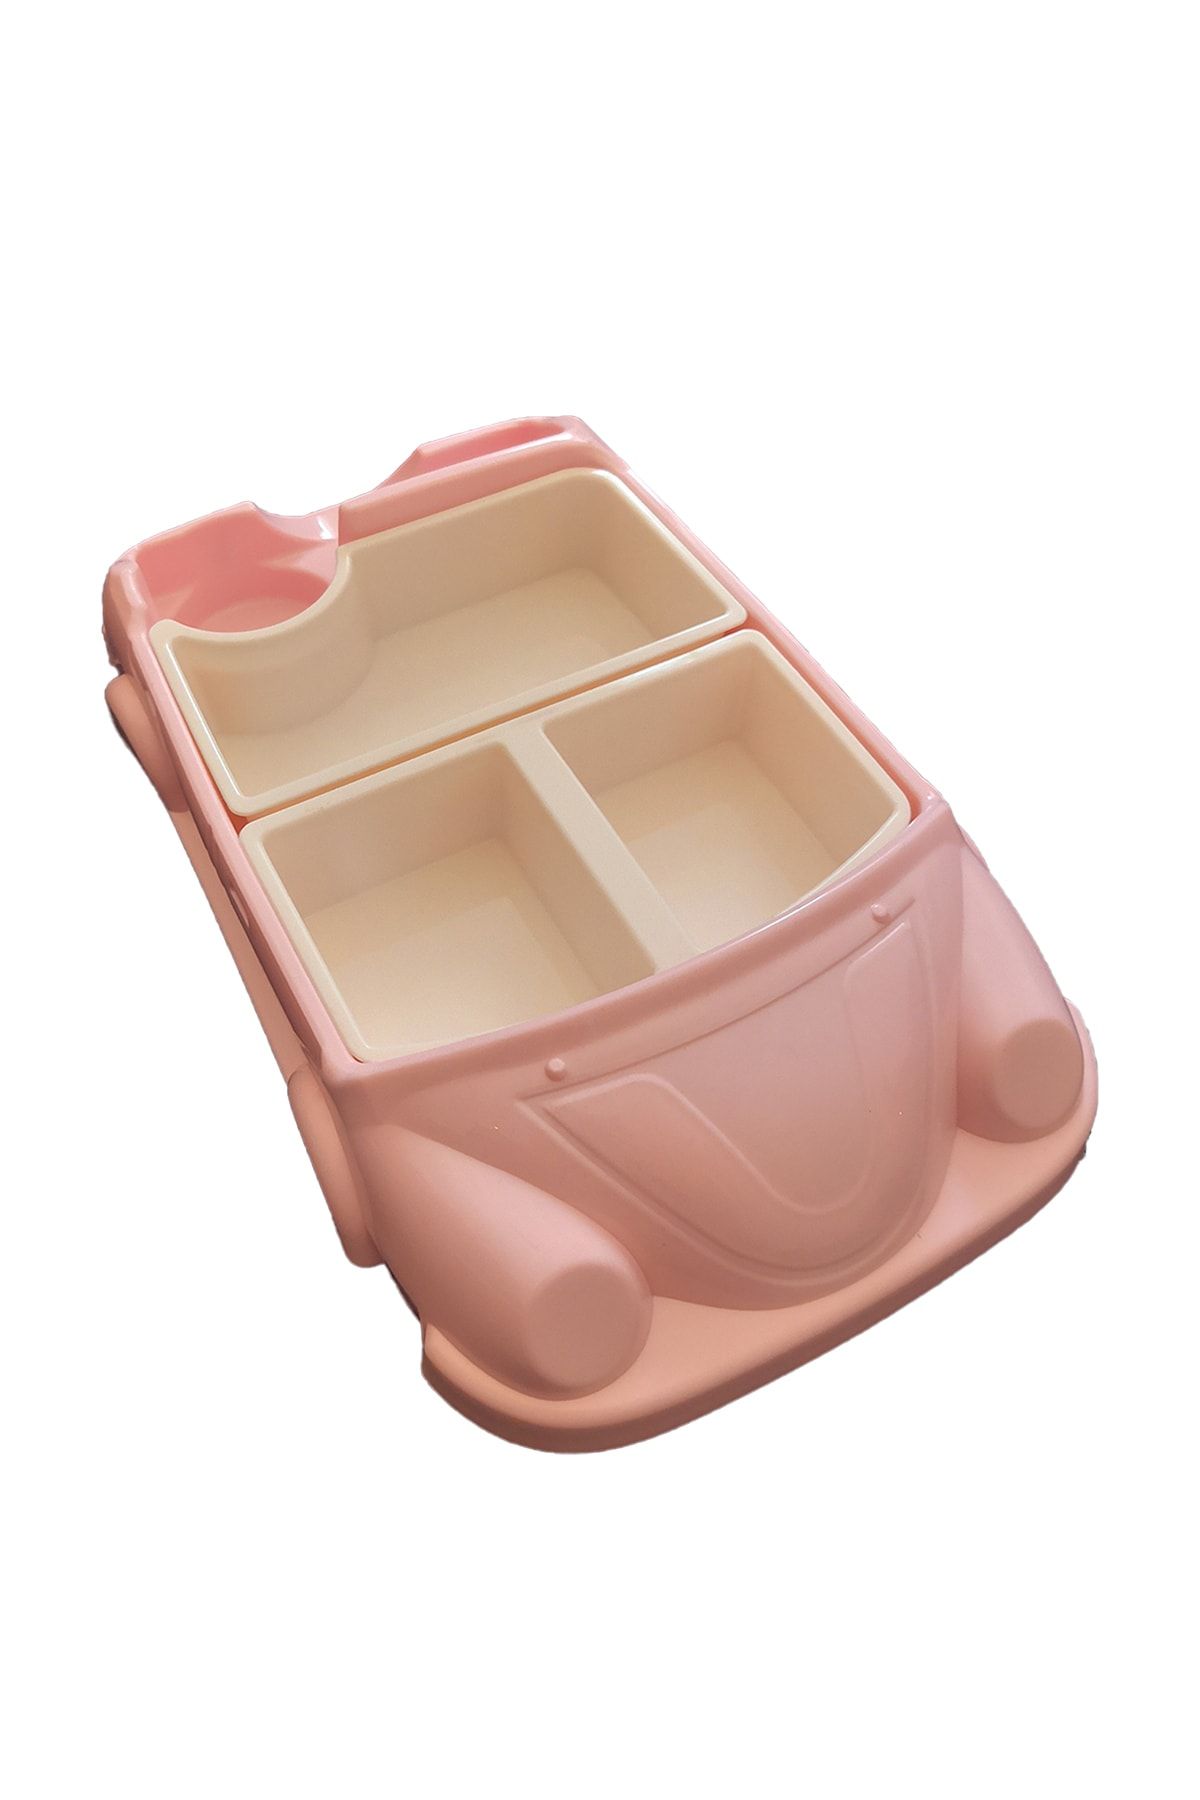 alorez Pembe Renk Araba Modelli Mama Tabağı Seti 8 Bölmeli Çocuk Yemek Tabağı Seti Kaseli Araba Mama Tabağı